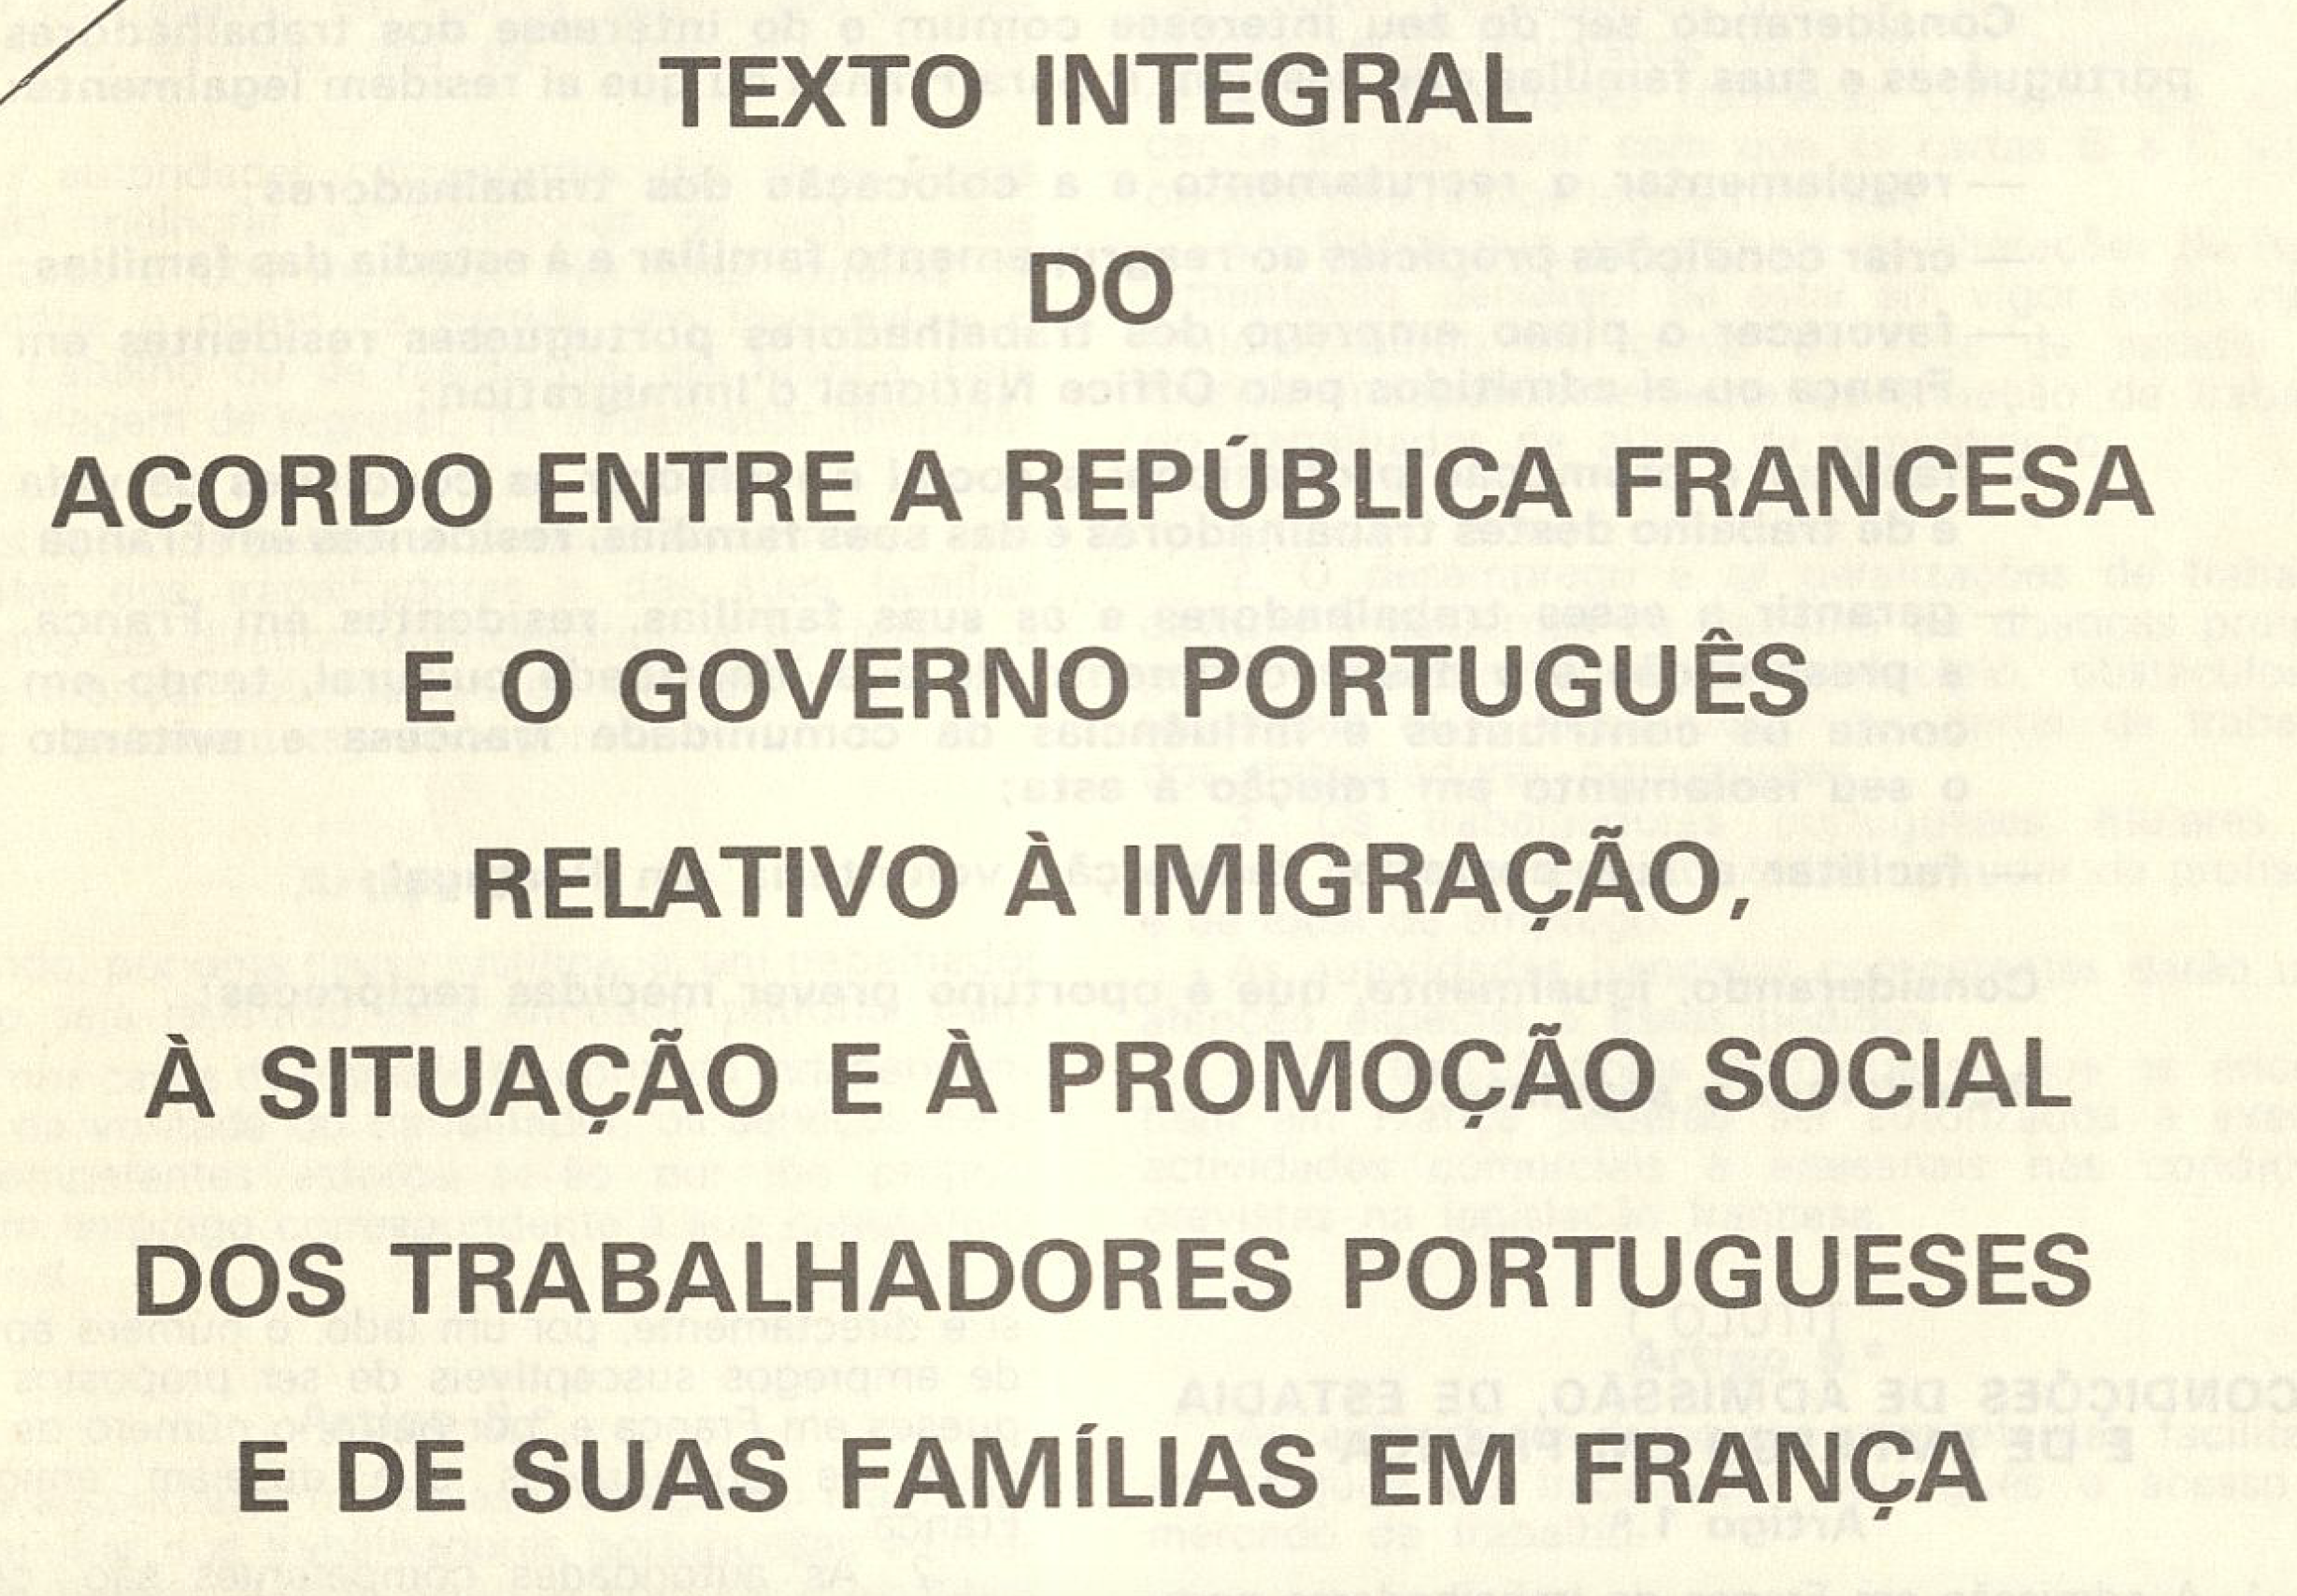 Texto integral do acordo entre a republica francesa e o governo português relativo à imigração